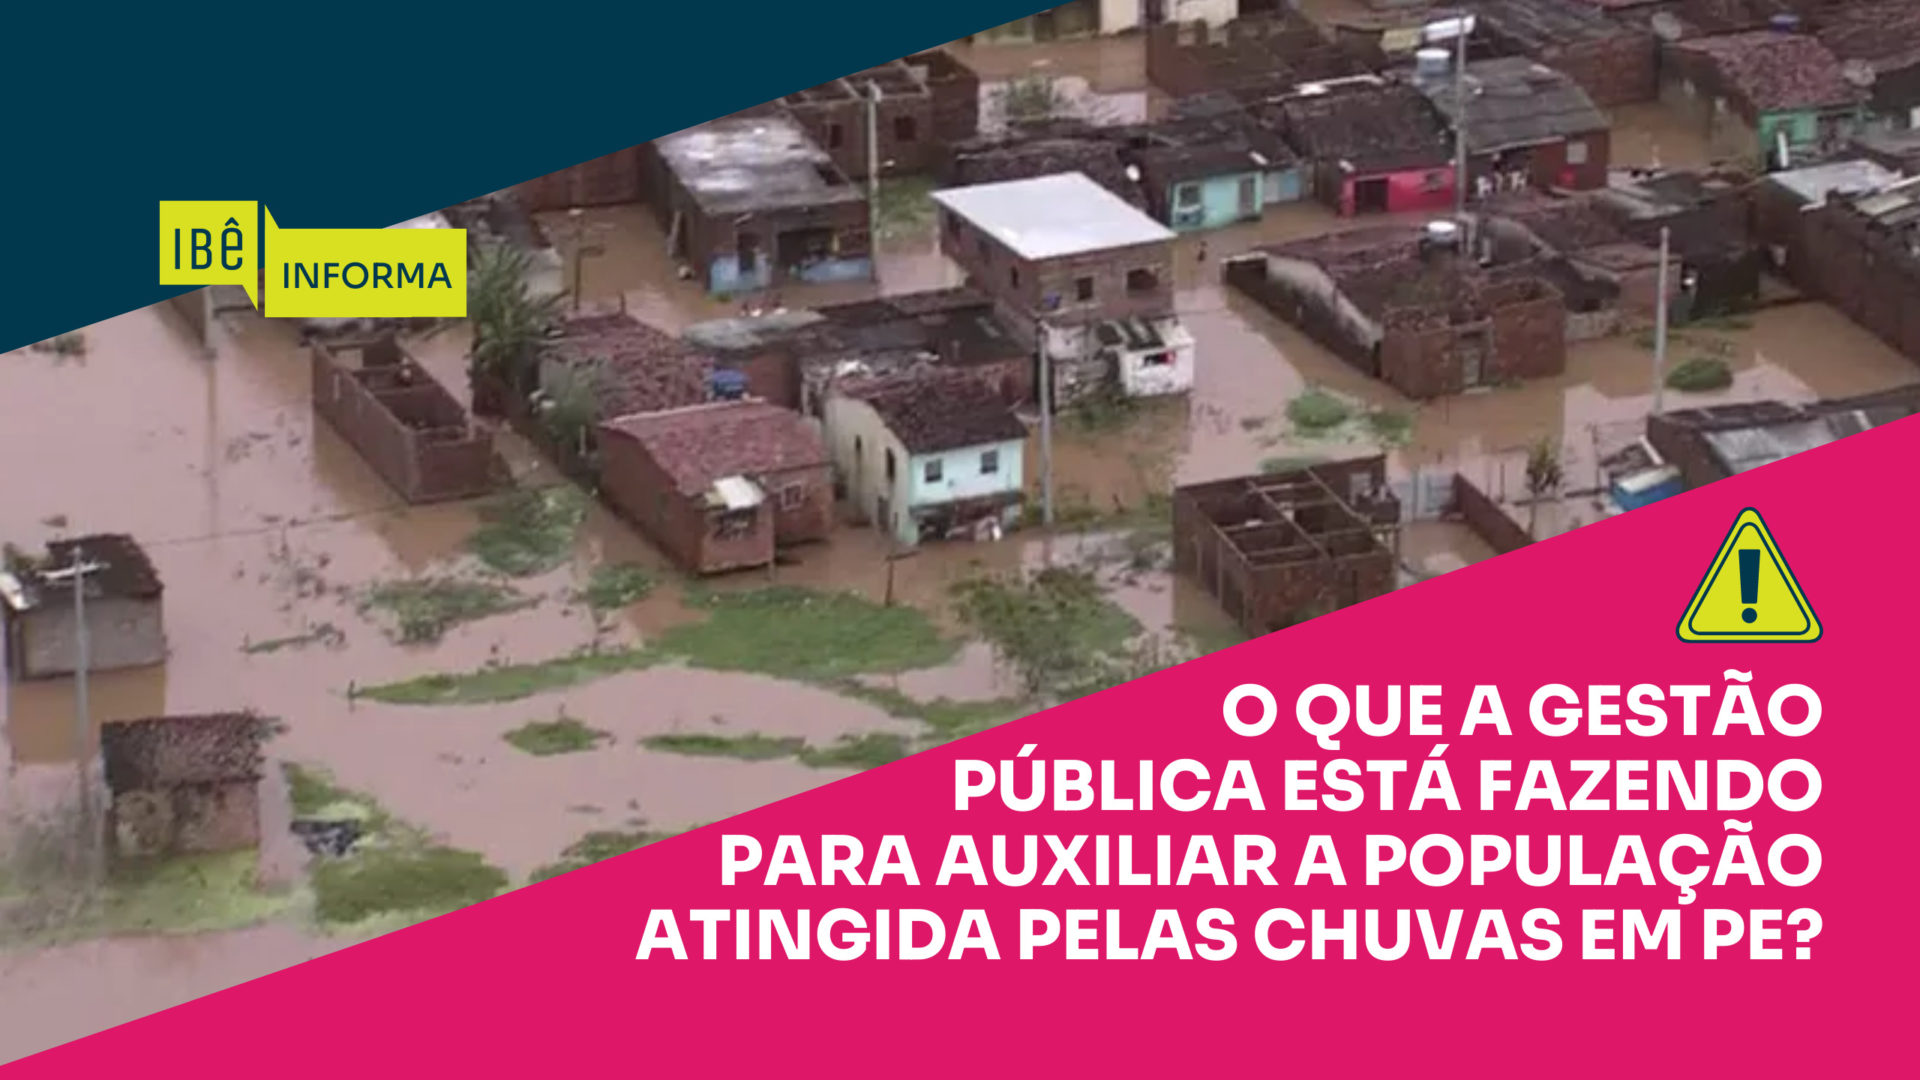 Ações das autoridades públicas no auxílio às vítimas das chuvas em Pernambuco